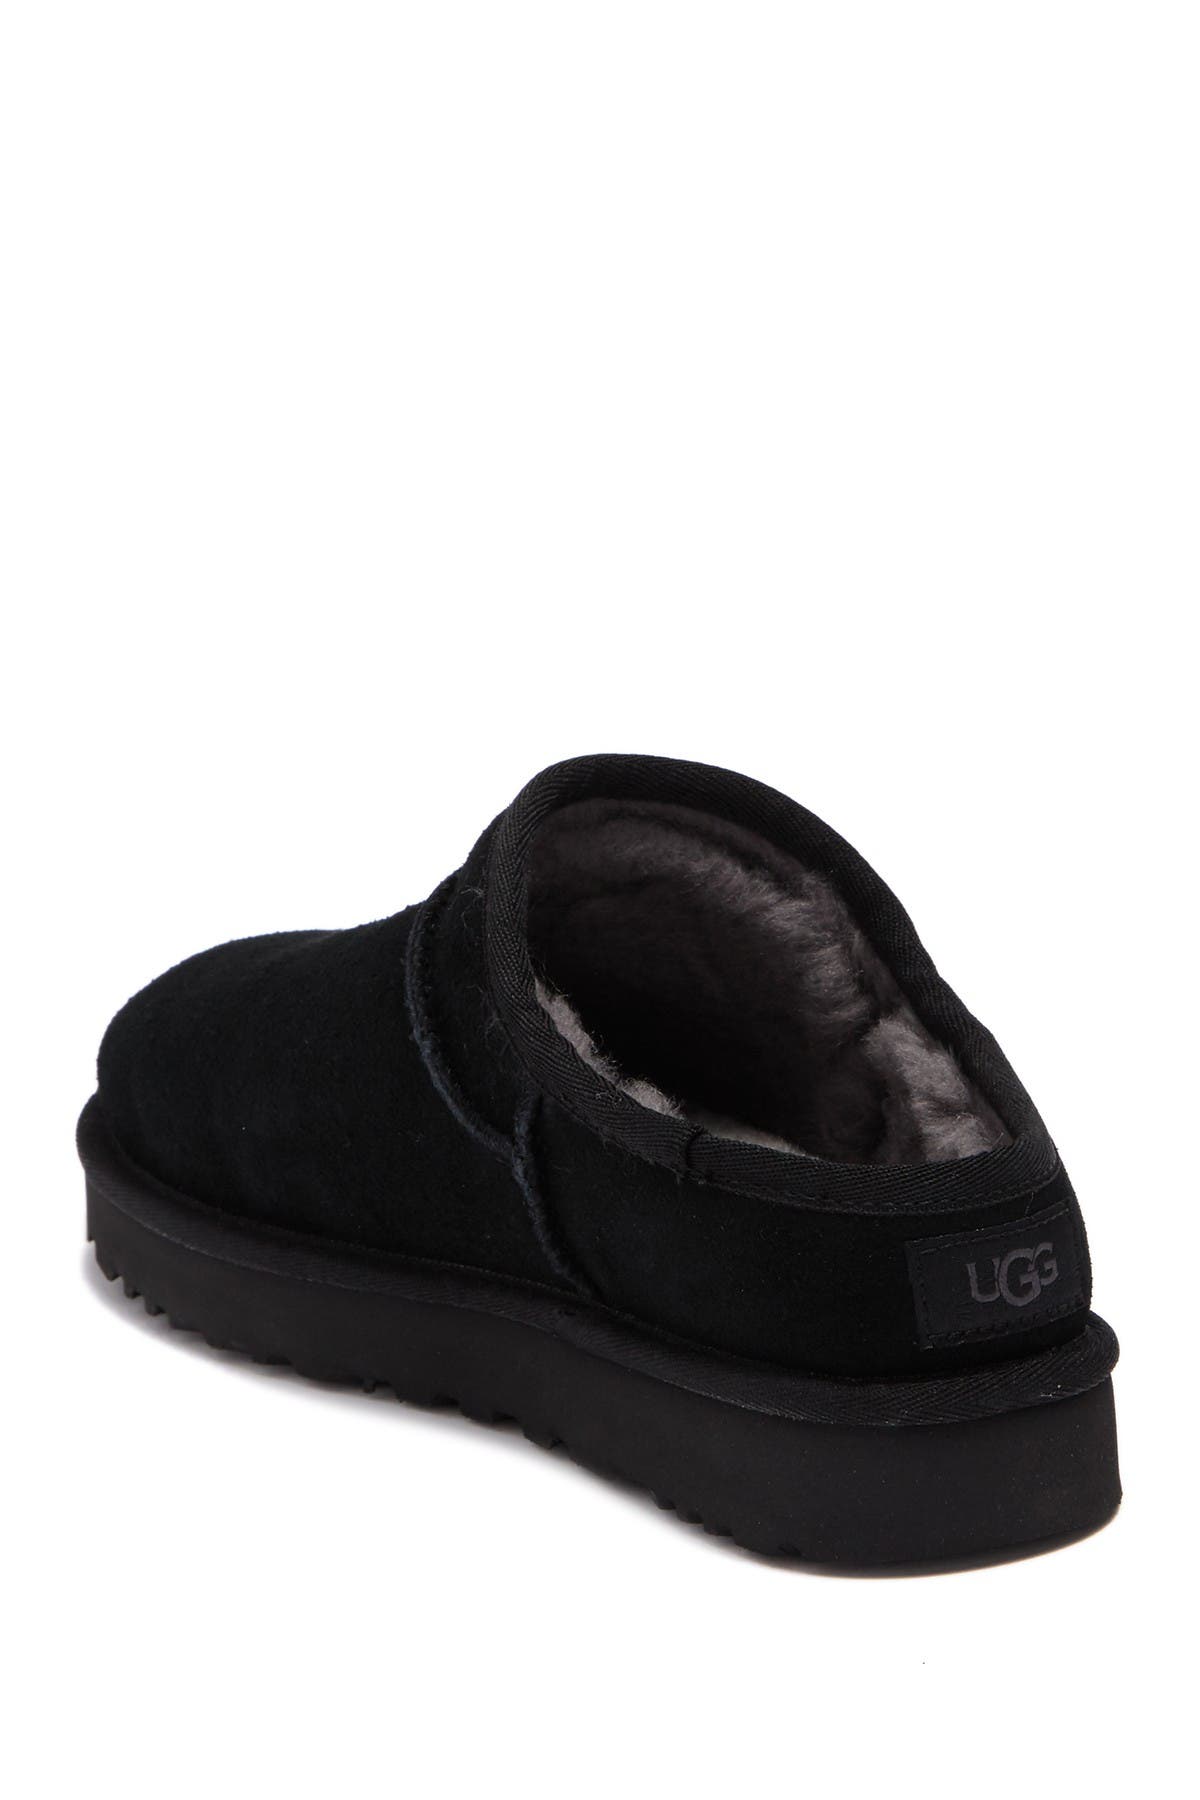 black ugg slippers sale